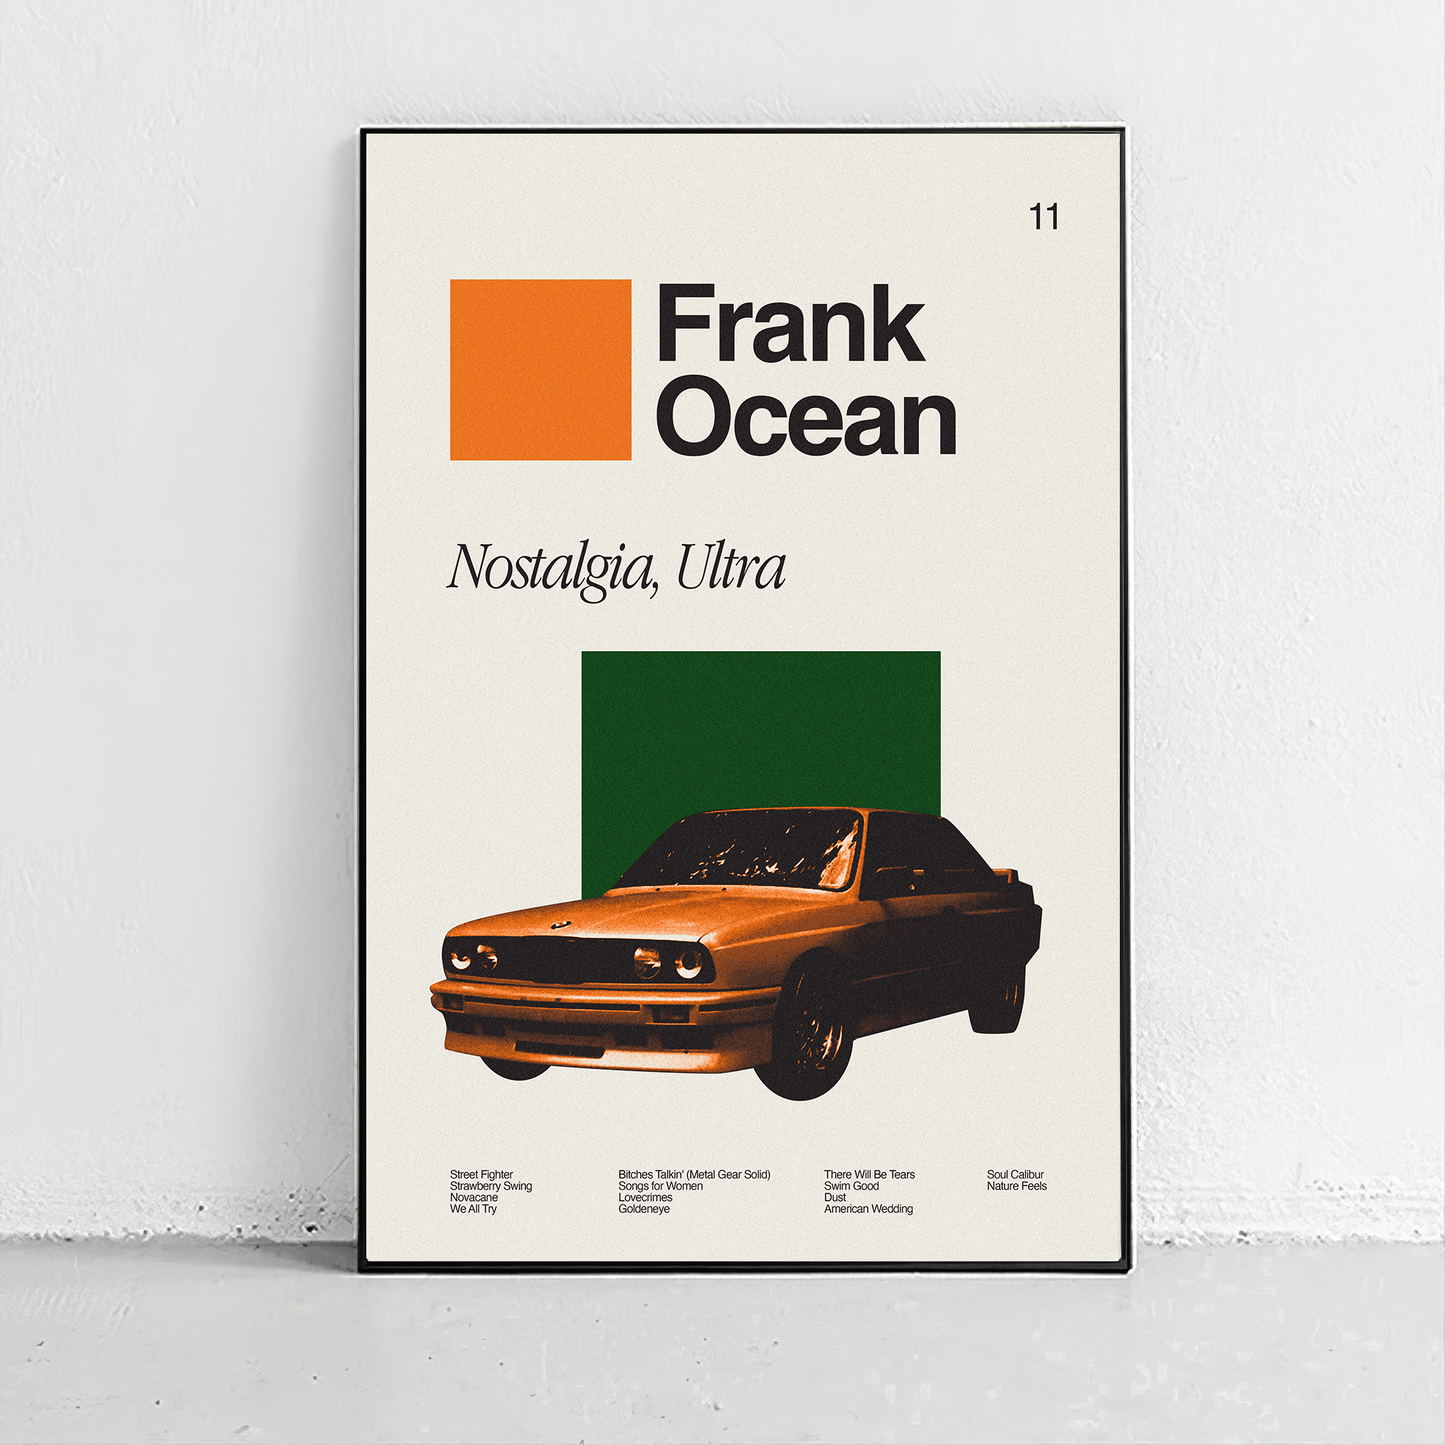 Frank Ocean - Nostalgia, Ultra